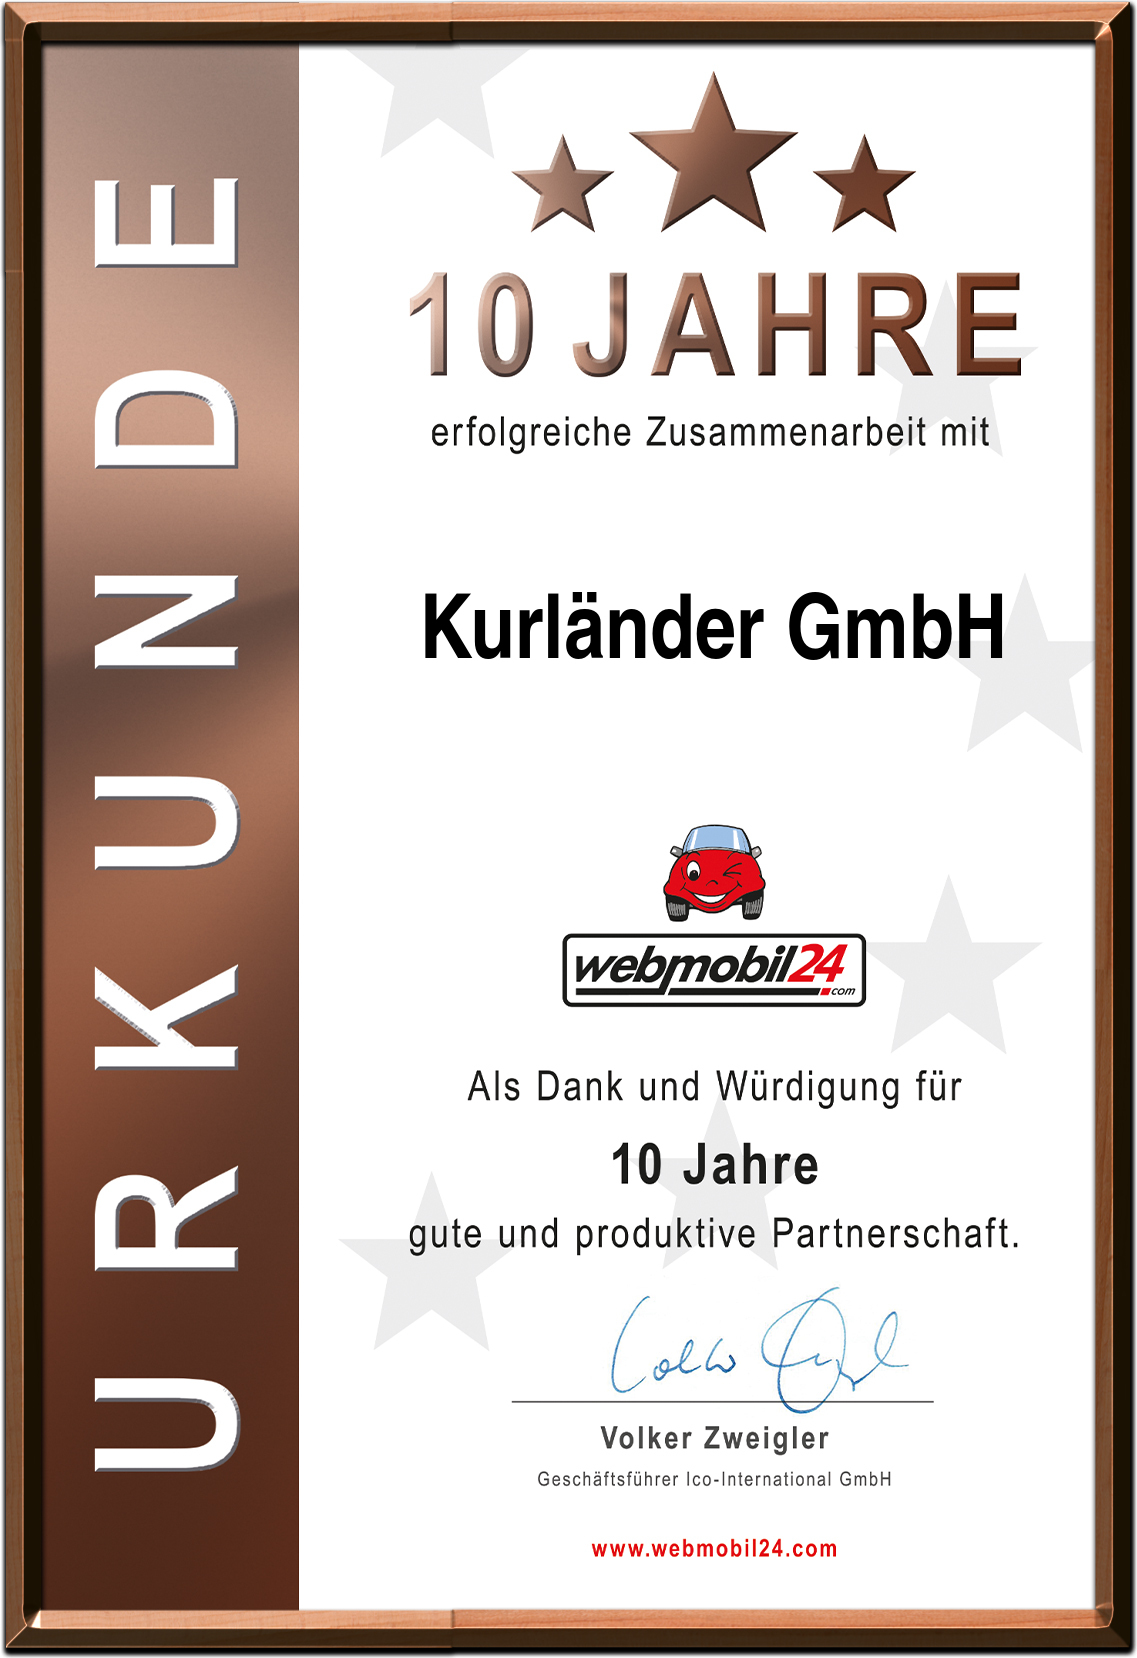 Kurländer GmbH